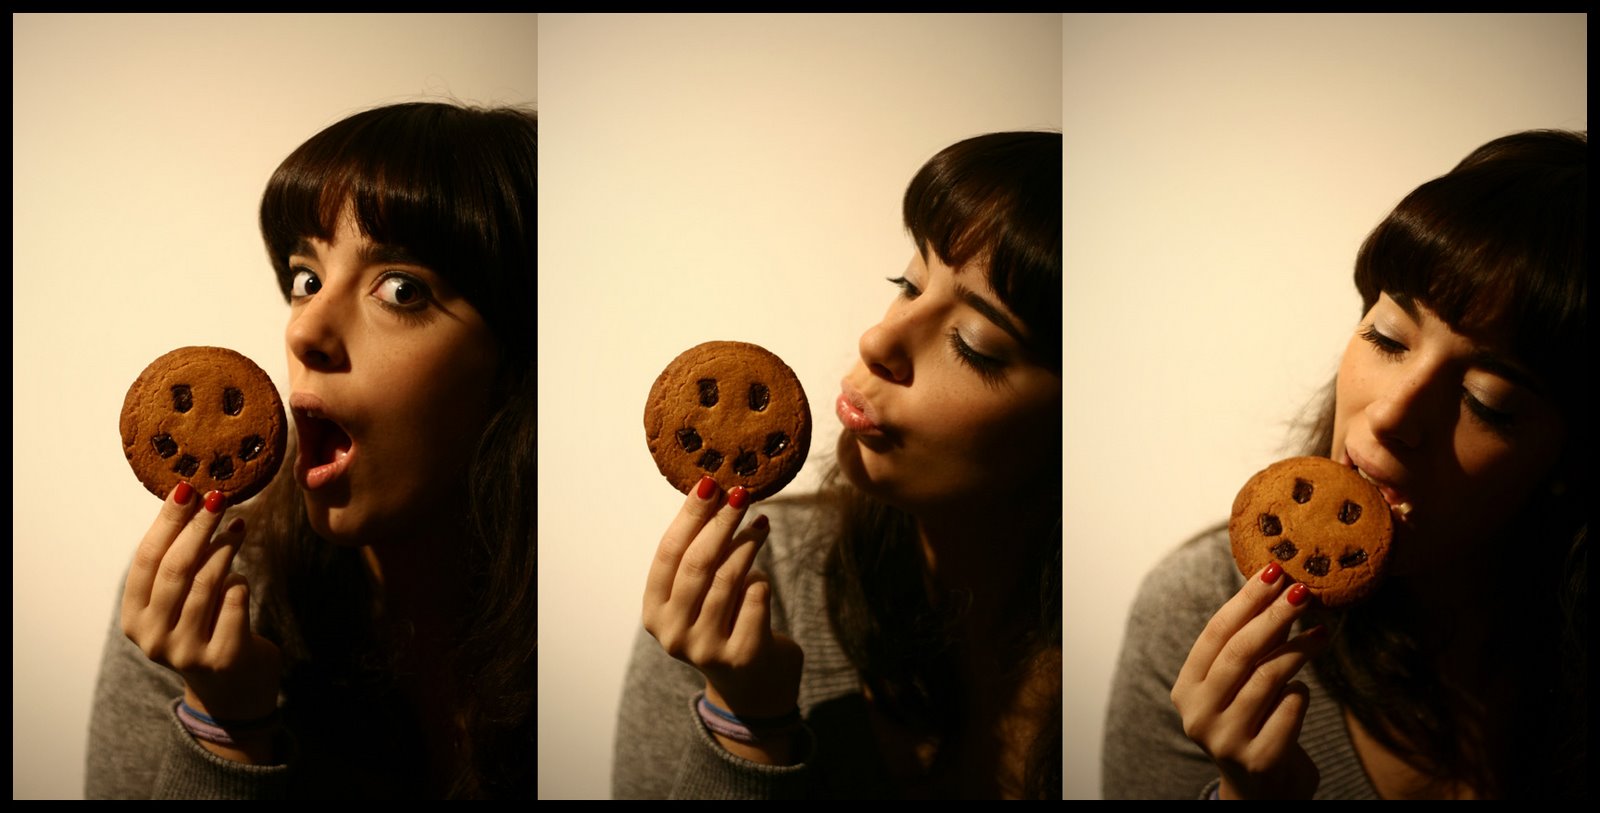 [cookie+monsterb.jpg]